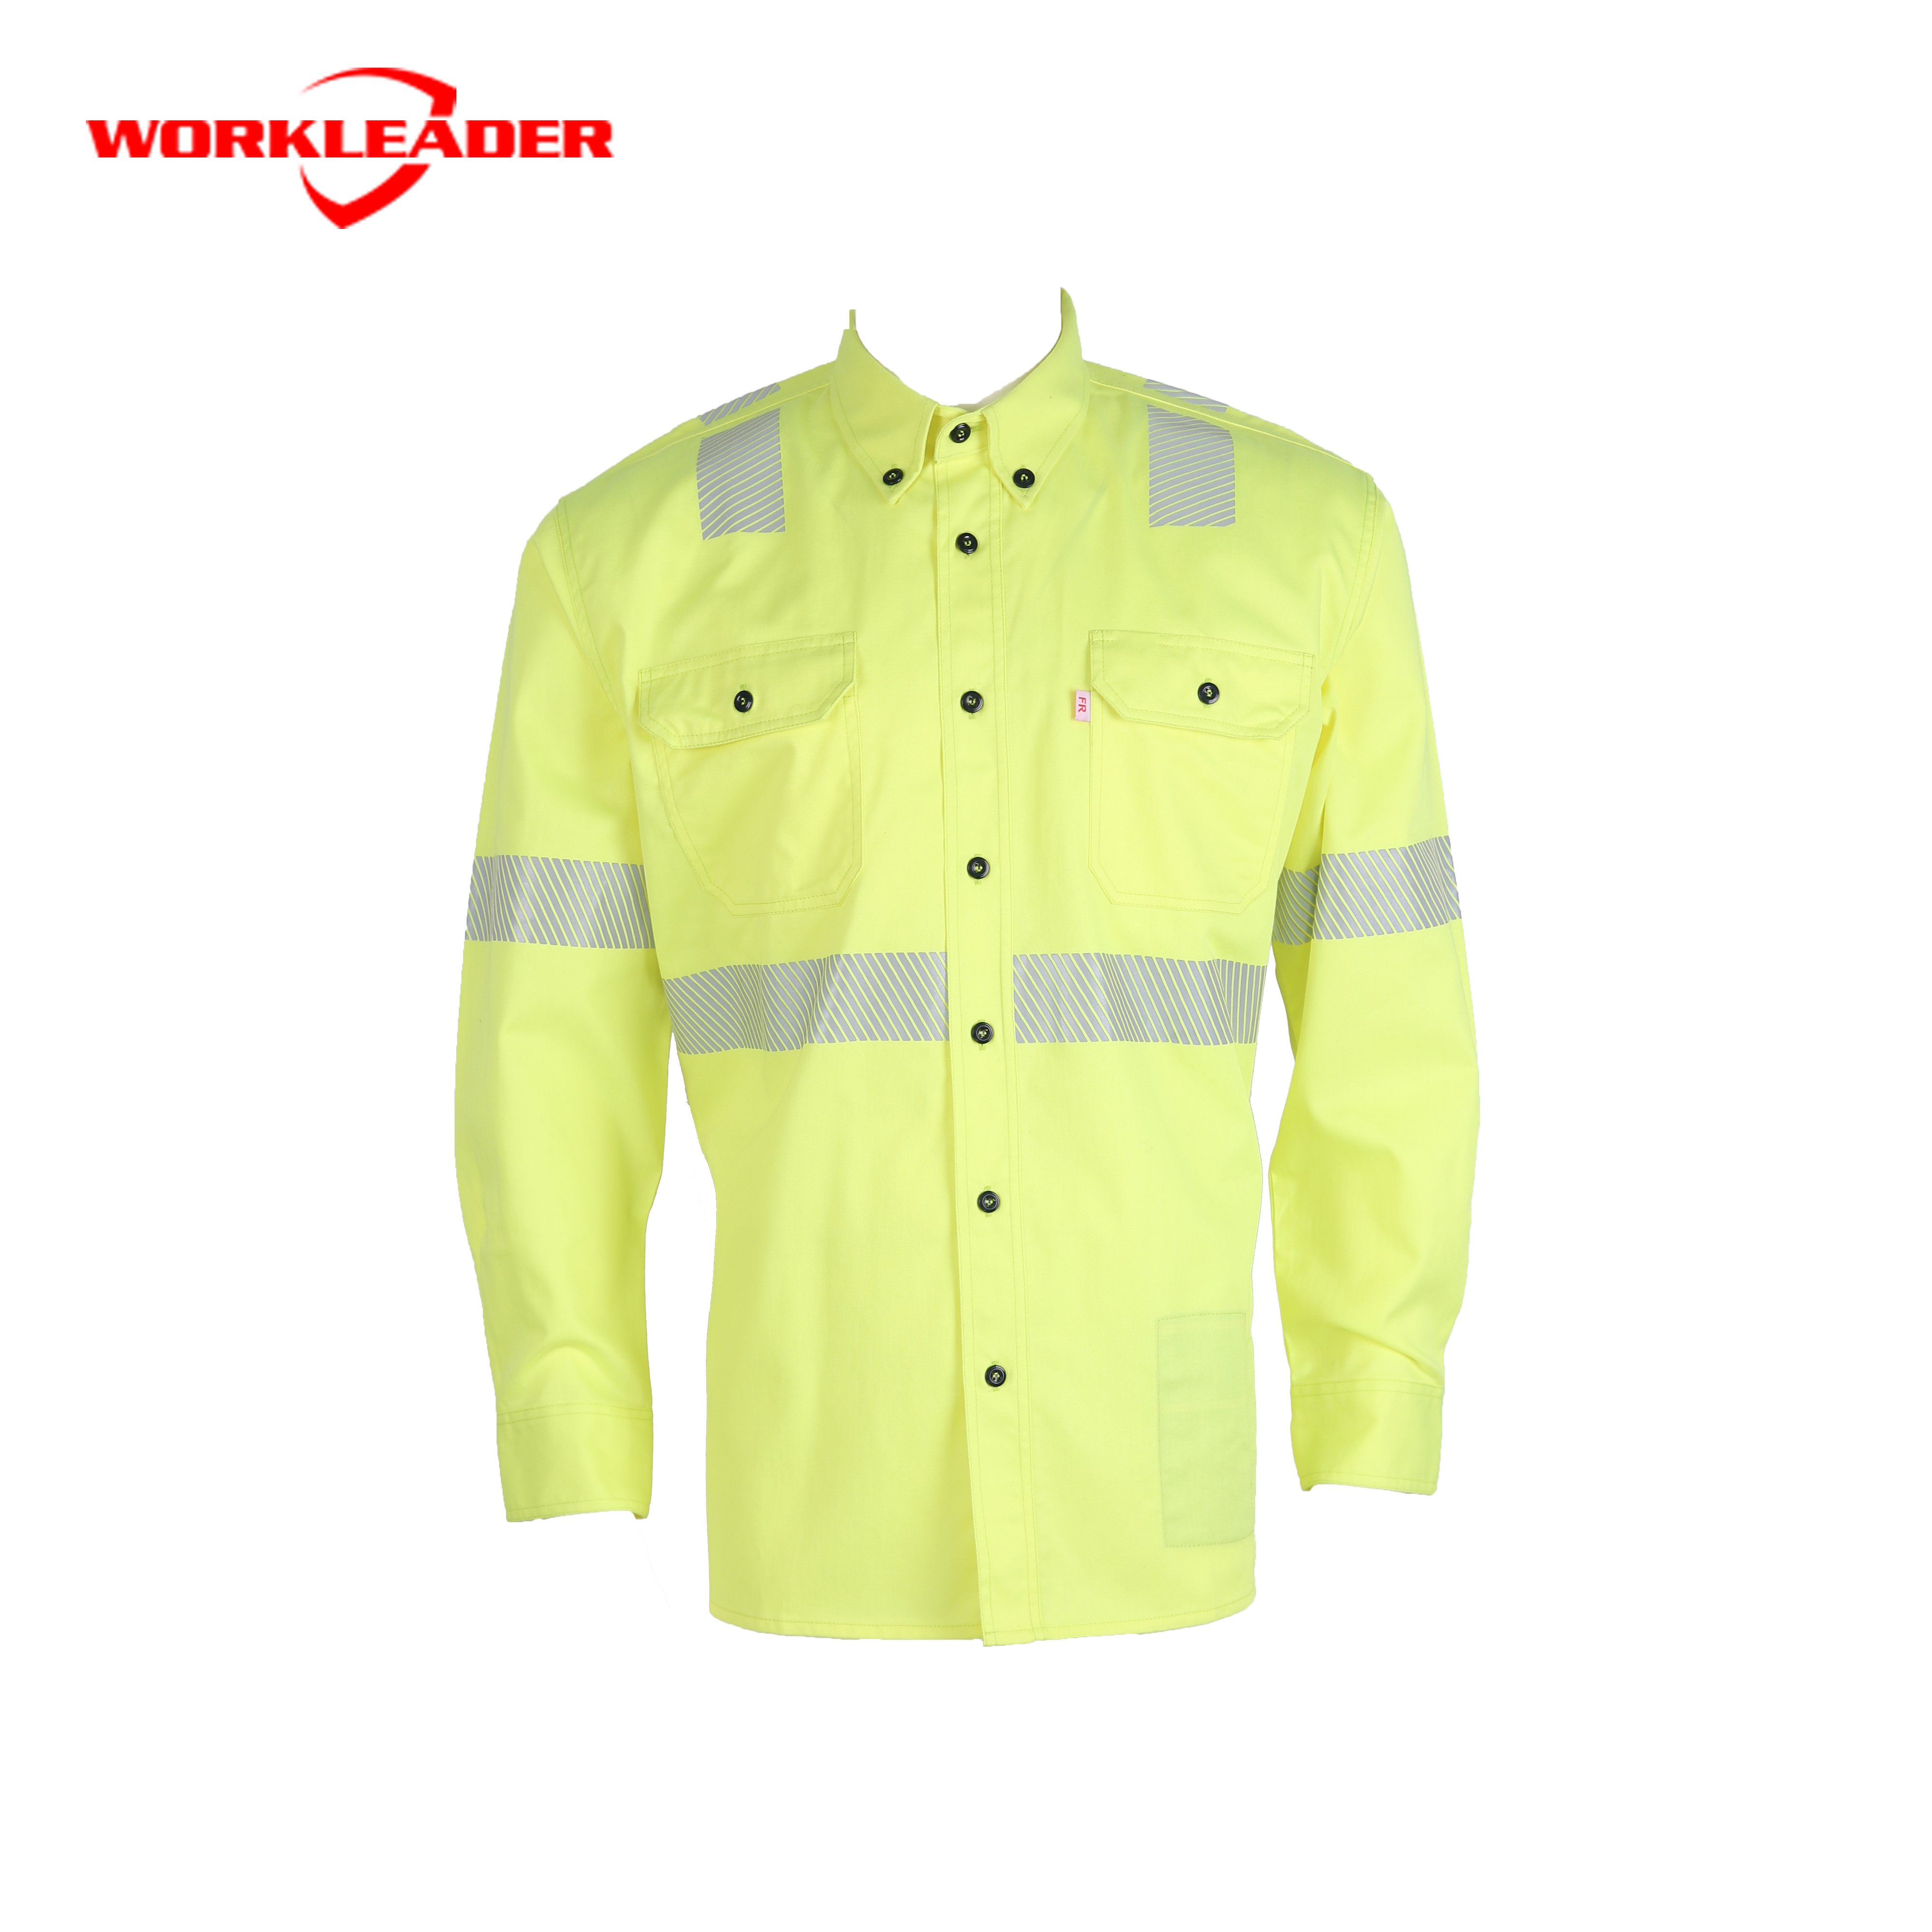 UL Nfpa2112 Светоотражающая желтая рубашка для дуговой сварки